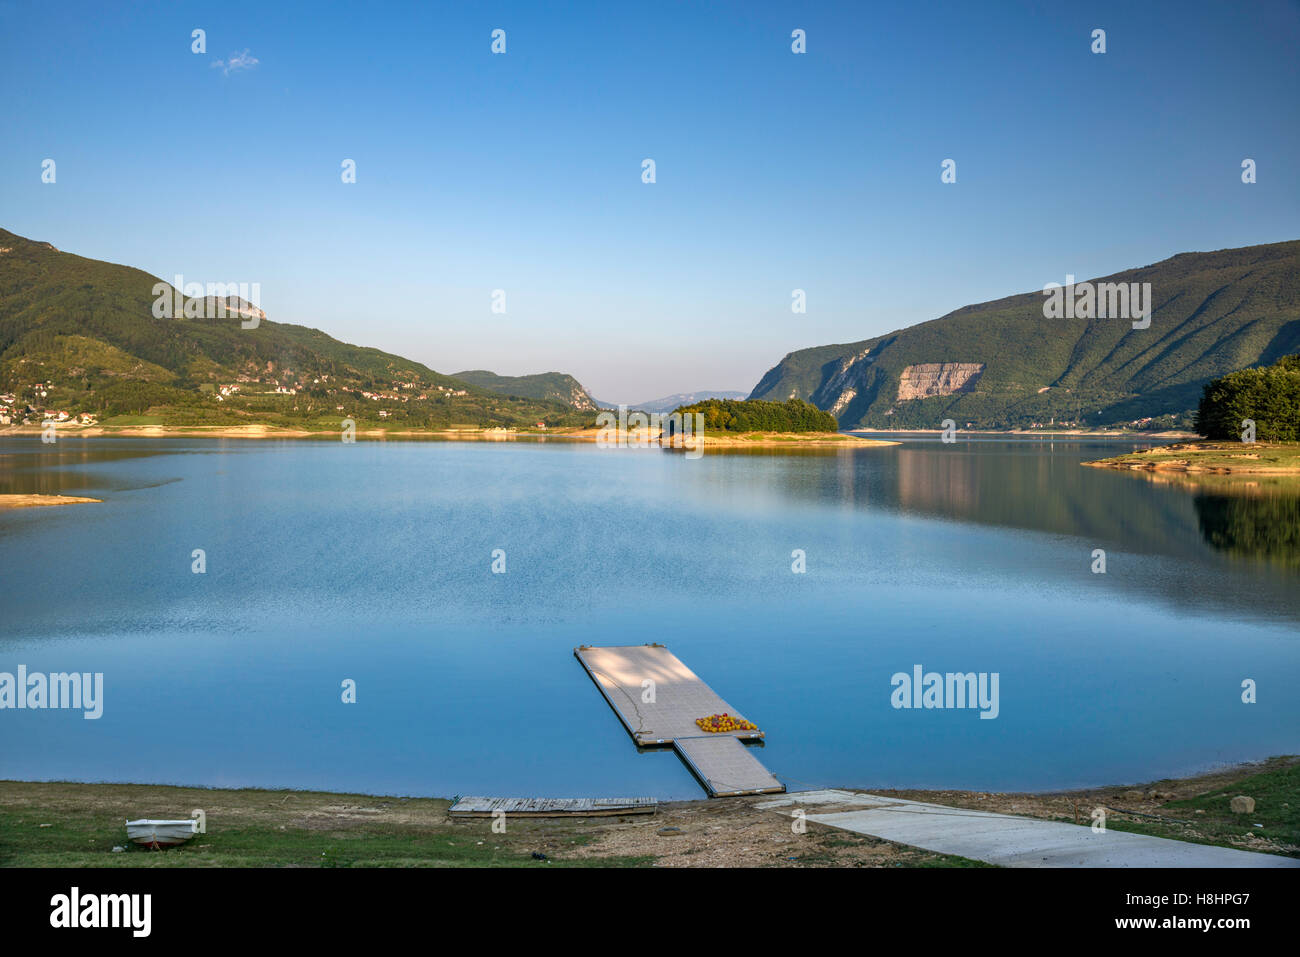 Ramsko jezero (Lac Rama), lac artificiel dans la vallée de Rama, Alpes dinariques, Bosnie et Herzégovine Banque D'Images